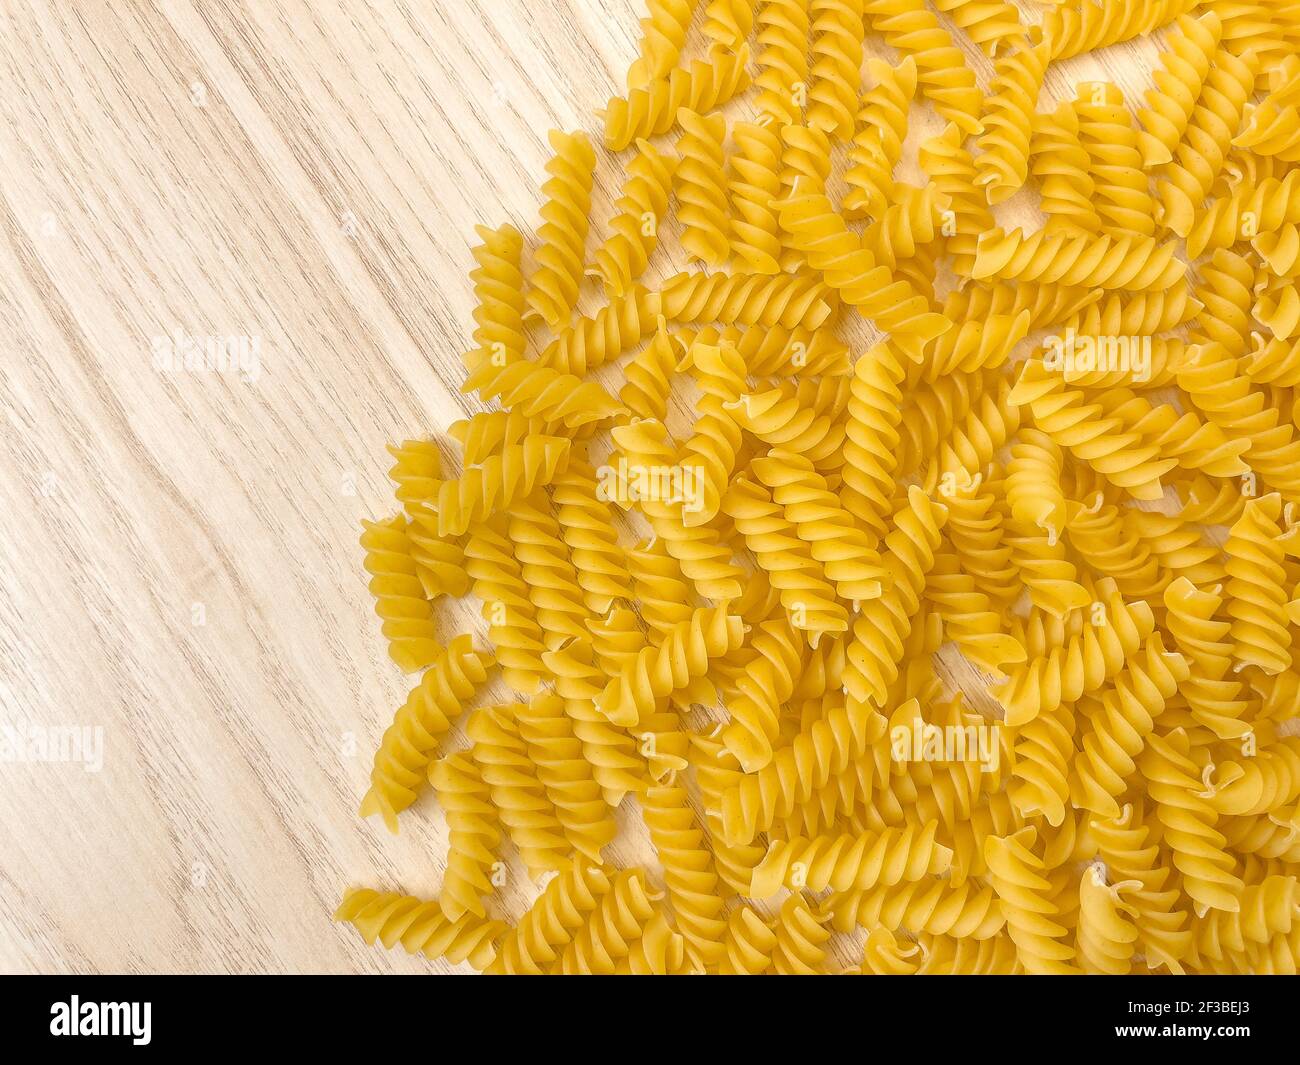 Fond ou texture de la nourriture pâtes italiennes sèches crues en forme de spirale sur une table ou un bureau en bois. Gros plan, macro, vue de dessus. Macaroni non cuit. Banque D'Images